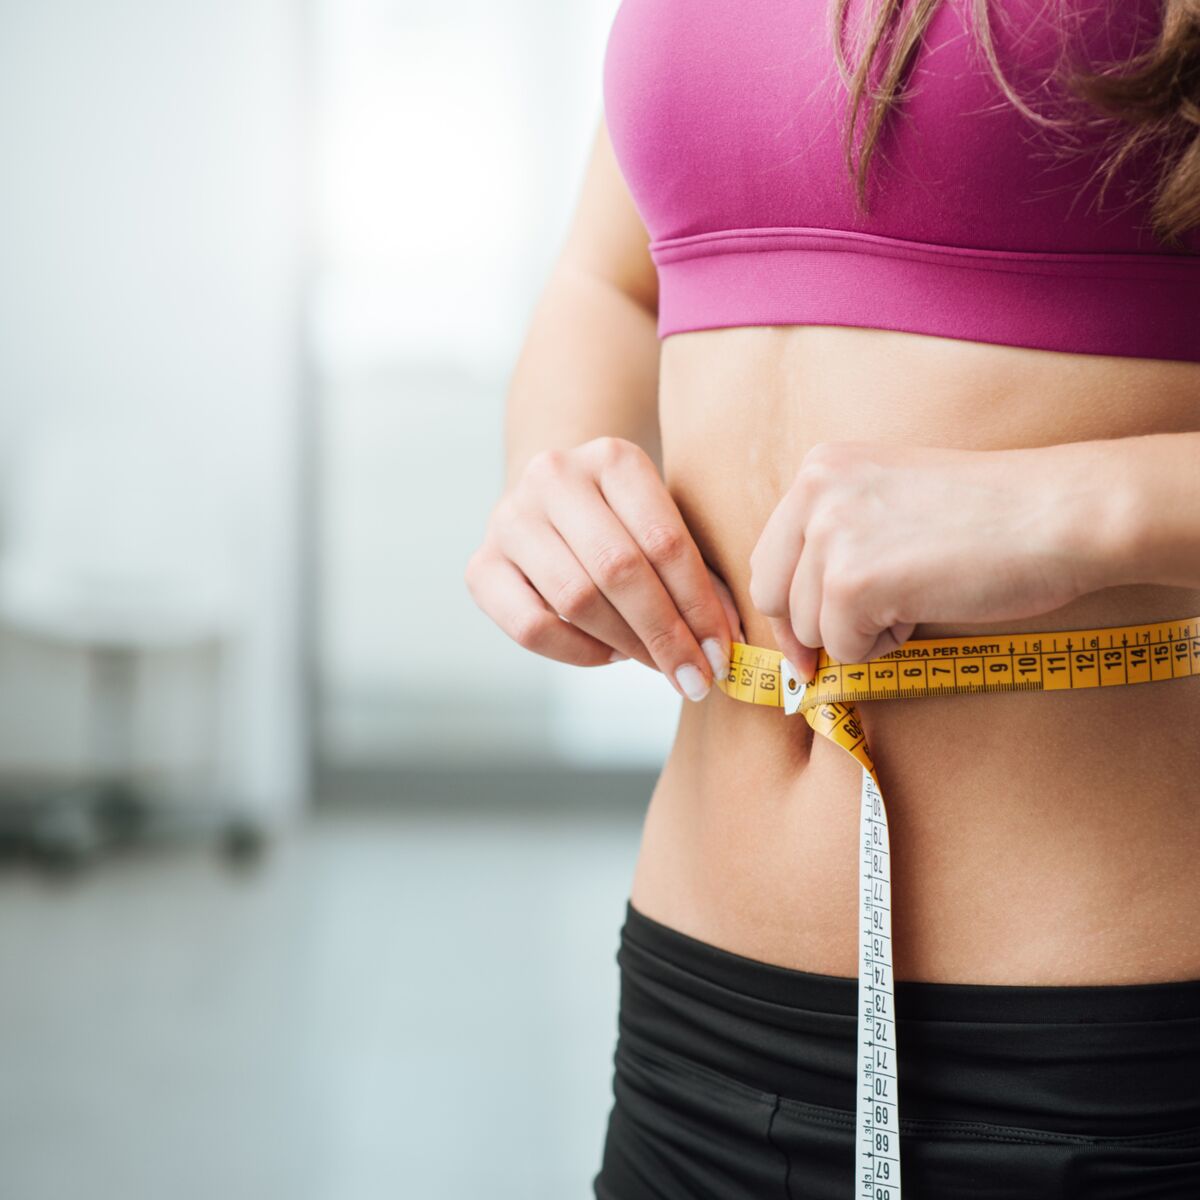 Maigrir, perdre du poids: les pistes afin d'y parvenir